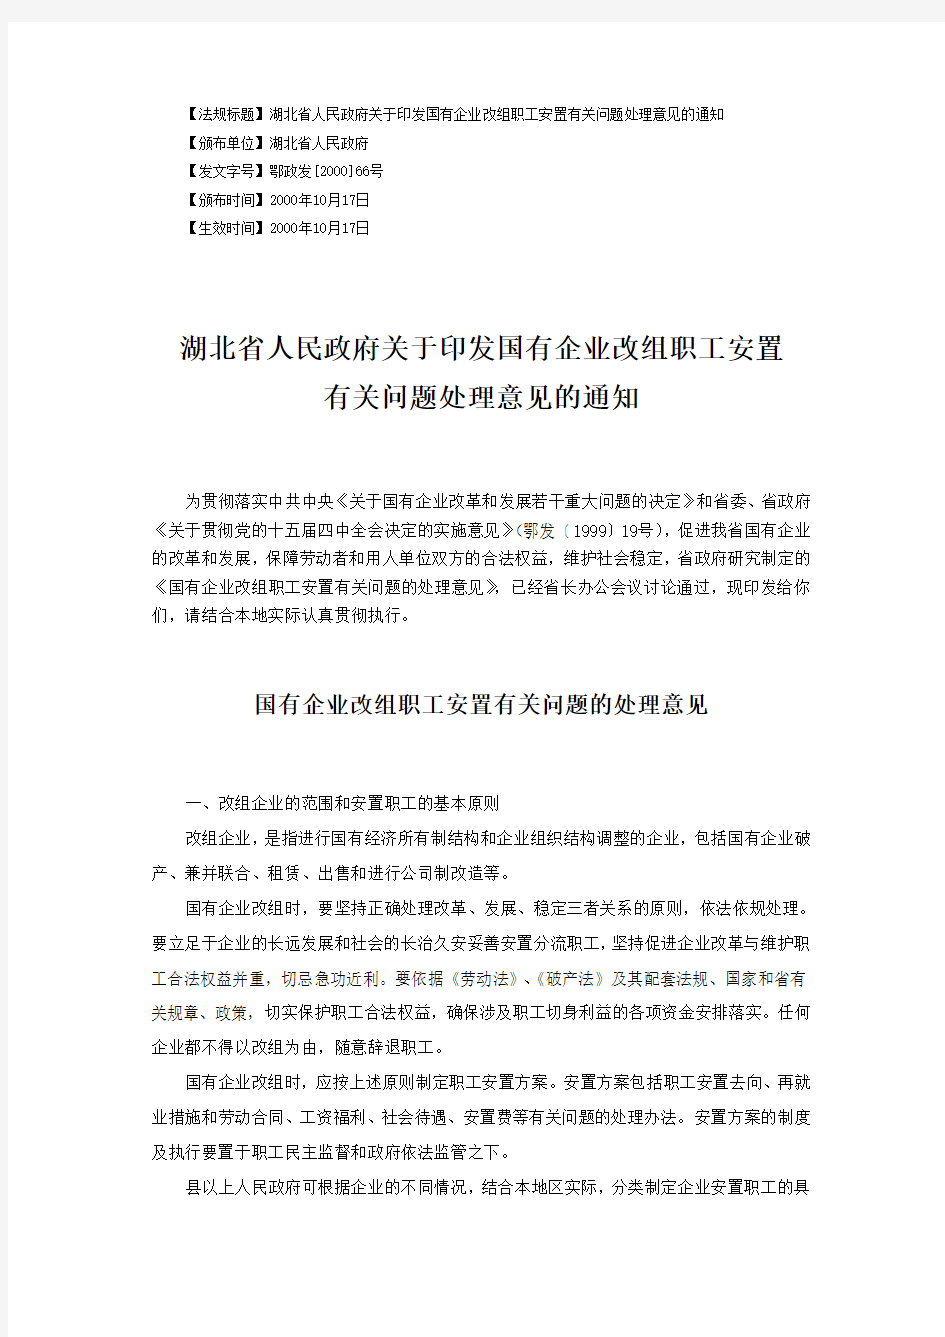 湖北省人民政府关于印发国有企业改组职工安置有关问题处理意见的通知